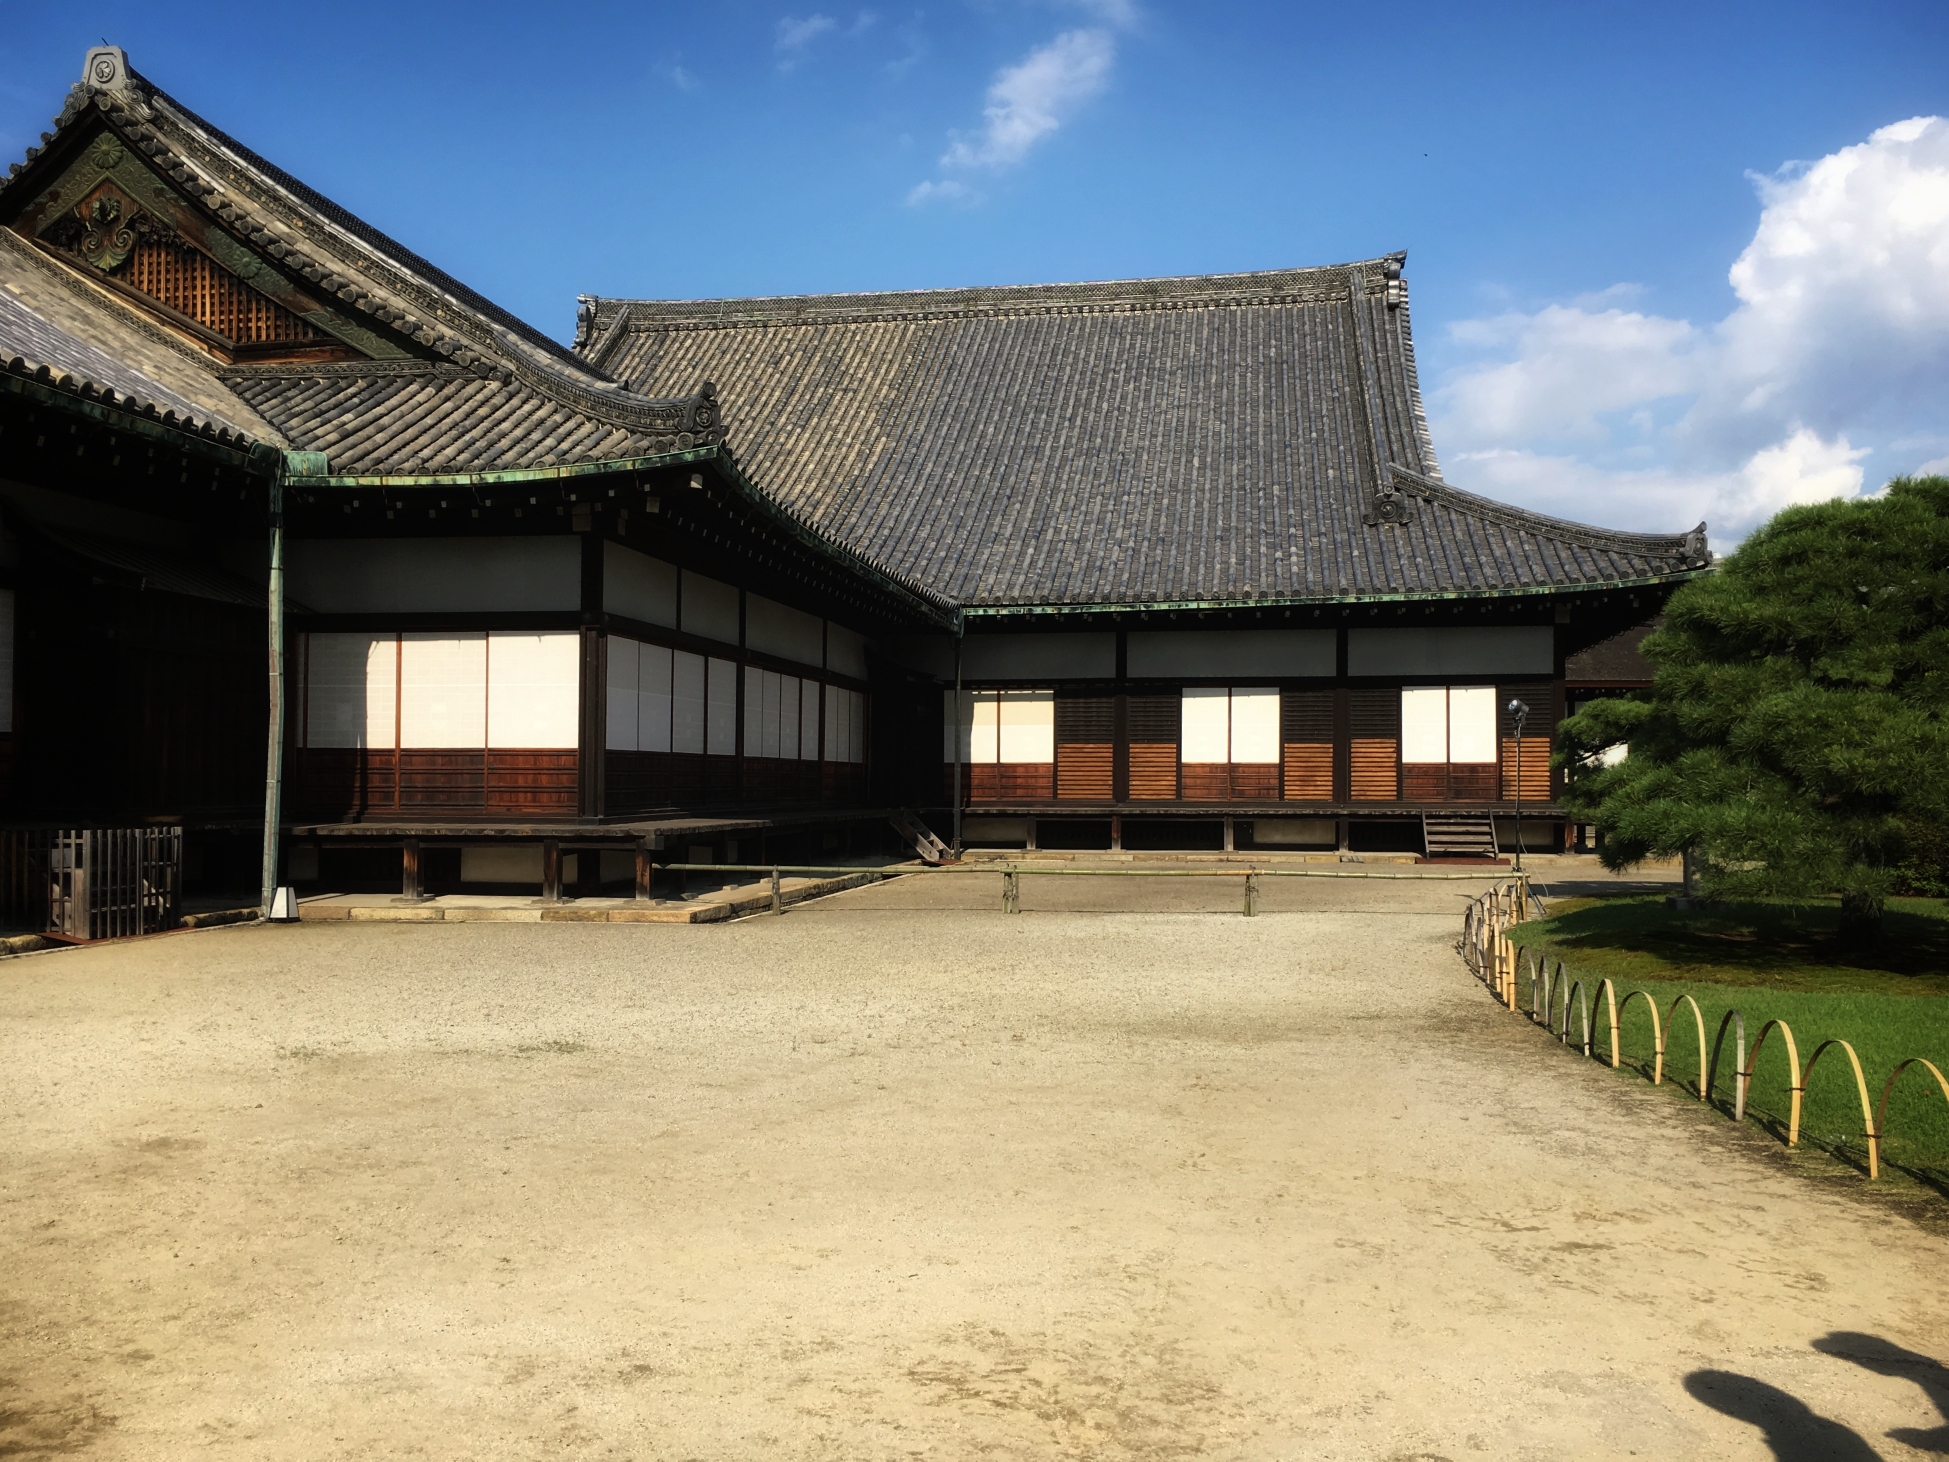 一个最能体现日本古建筑的城市—京都